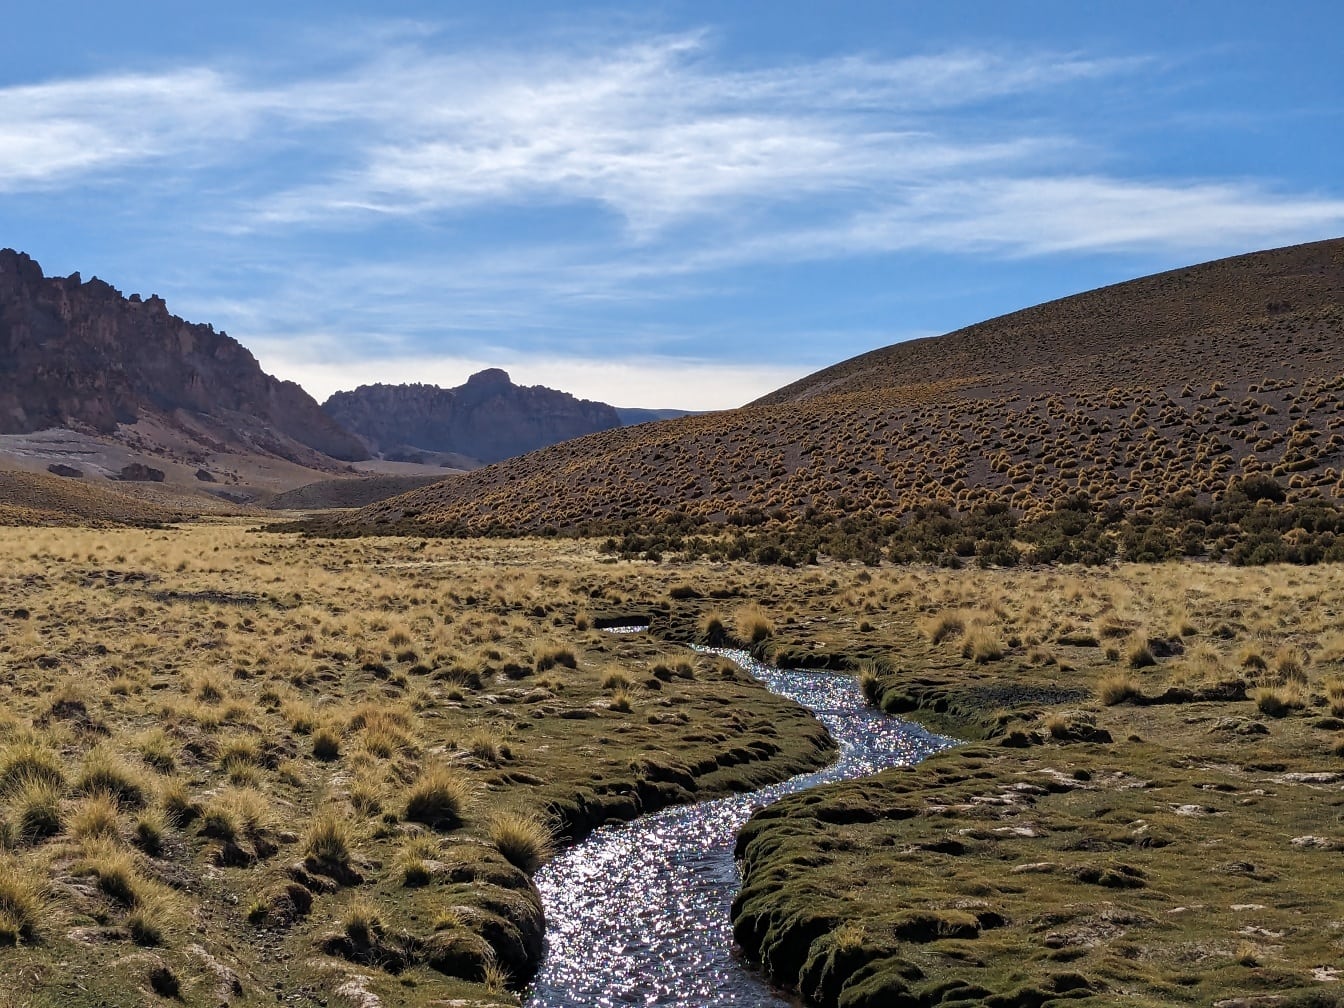 Peisaj uimitor de pârâu care trece printr-un câmp ierbos din Puna de Atacama din Argentina